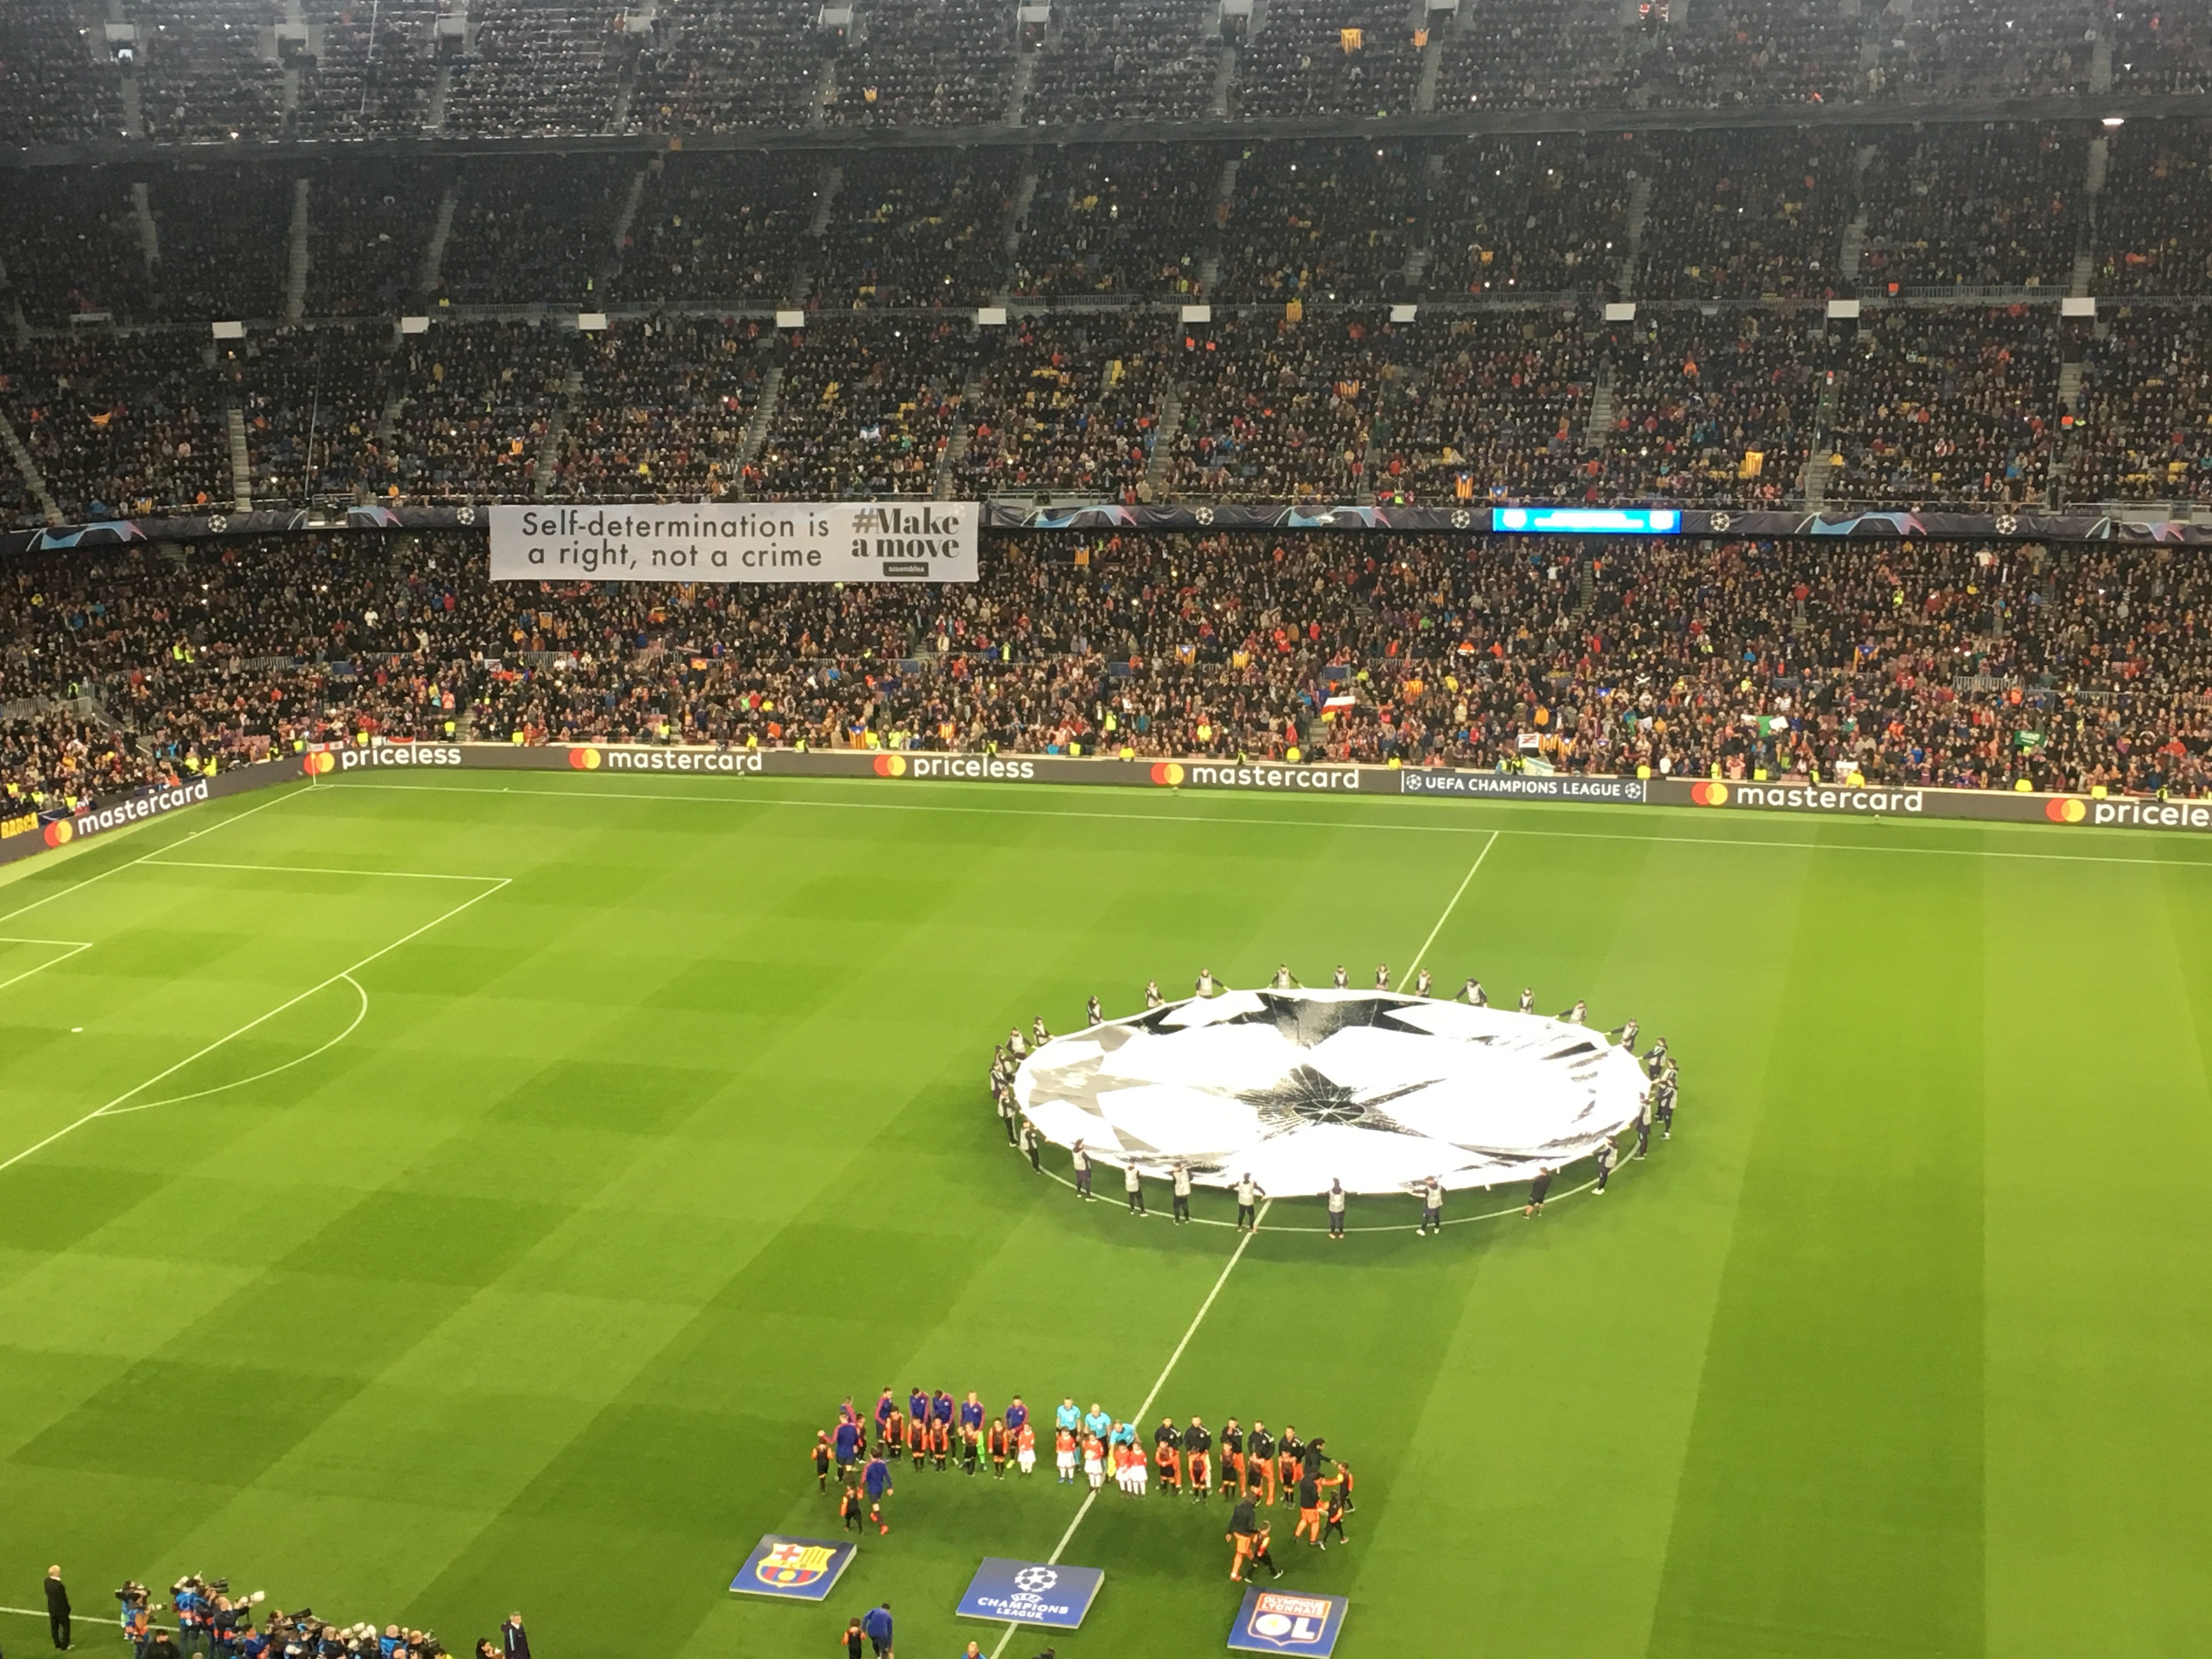 Missatge del Camp Nou a Europa: "L'autodeterminació és un dret, no un delicte"